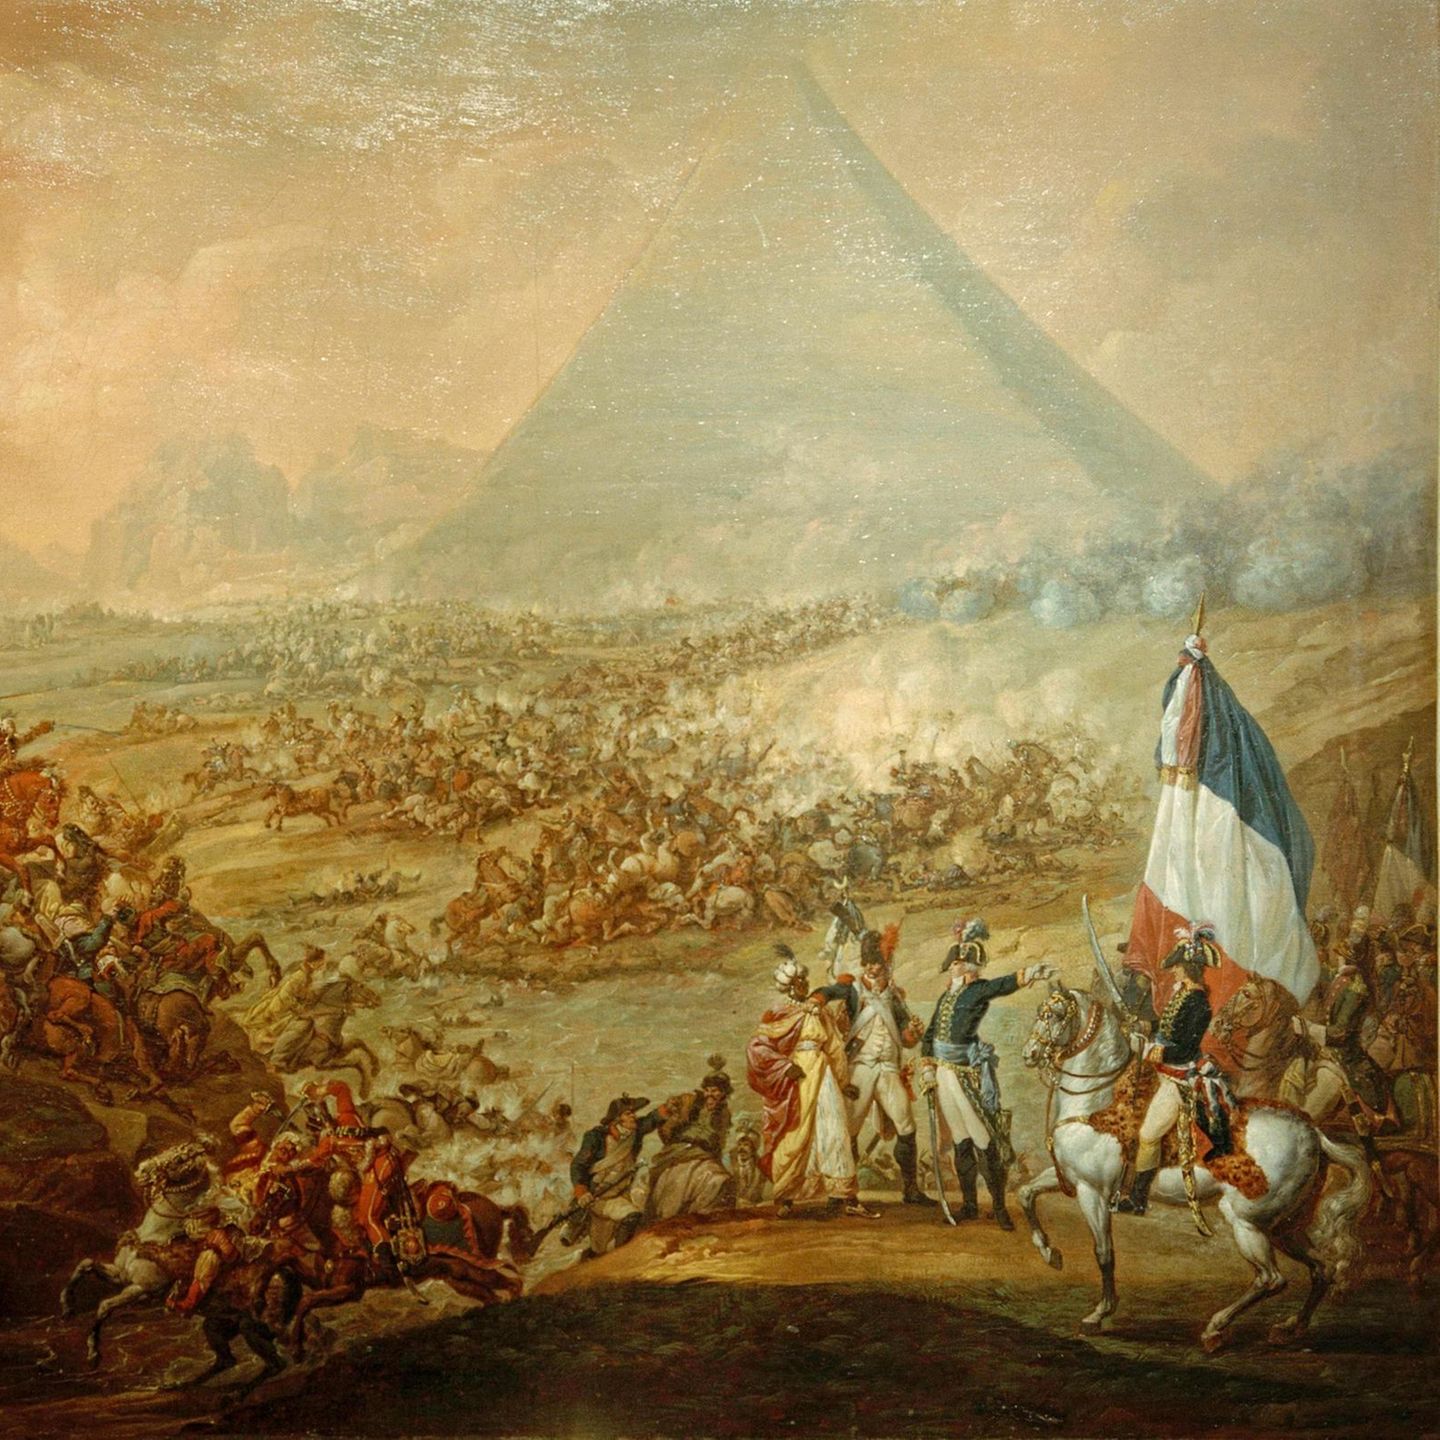 Am 21. Juli 1798 besiegen die Franzosen ein Heer der in Ägypten herrschenden Mamelucken und ziehen in die Hauptstadt Kairo ein. Sie verstehen sich als Befreier, doch die Ägypter werden die Europäer als Besatzer bekämpfen